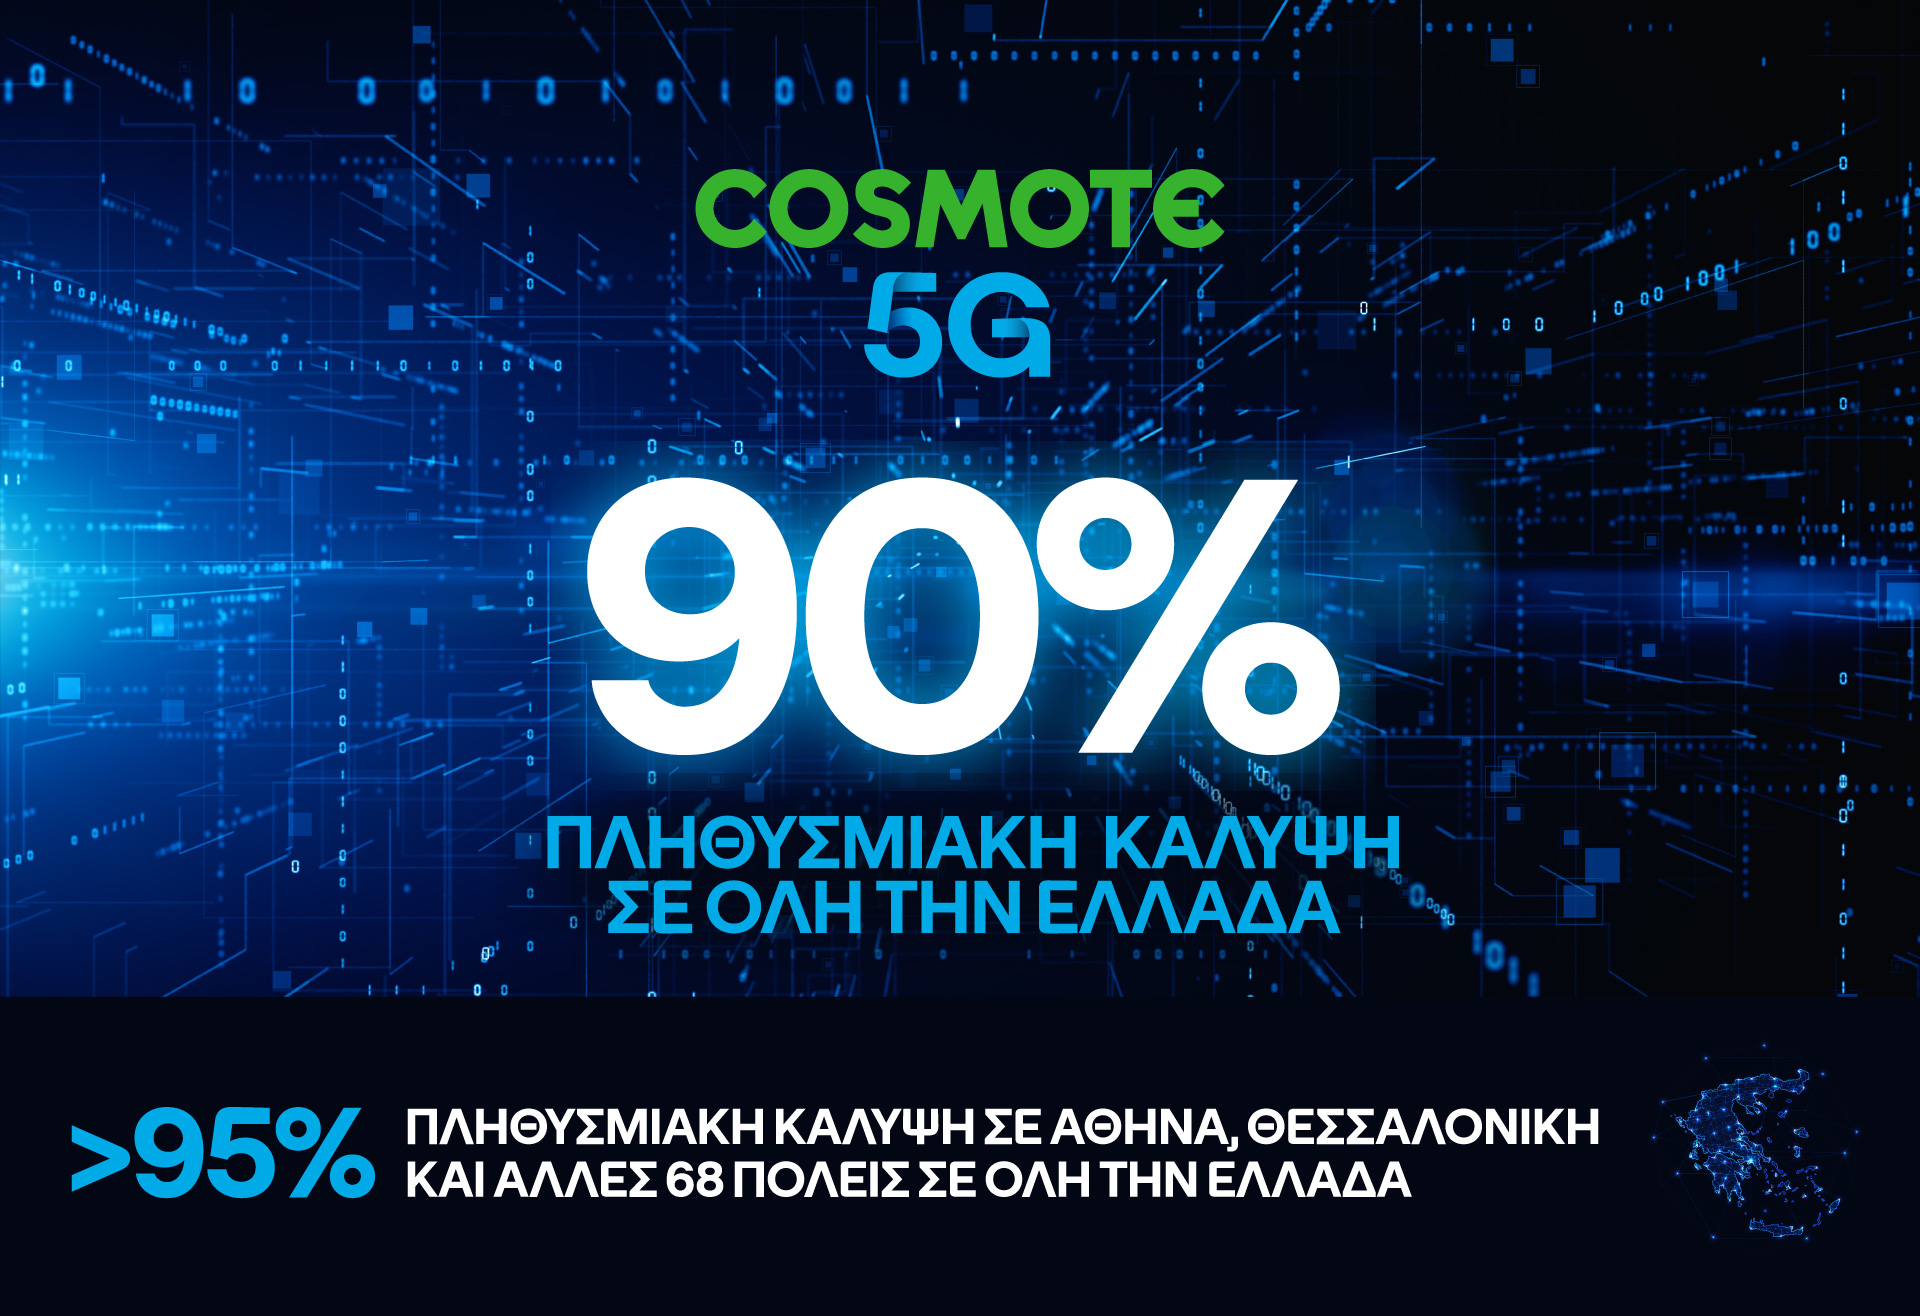 Cosmote: Στο 90% η πανελλαδική κάλυψη του 5G πολύ νωρίτερα από το στόχο